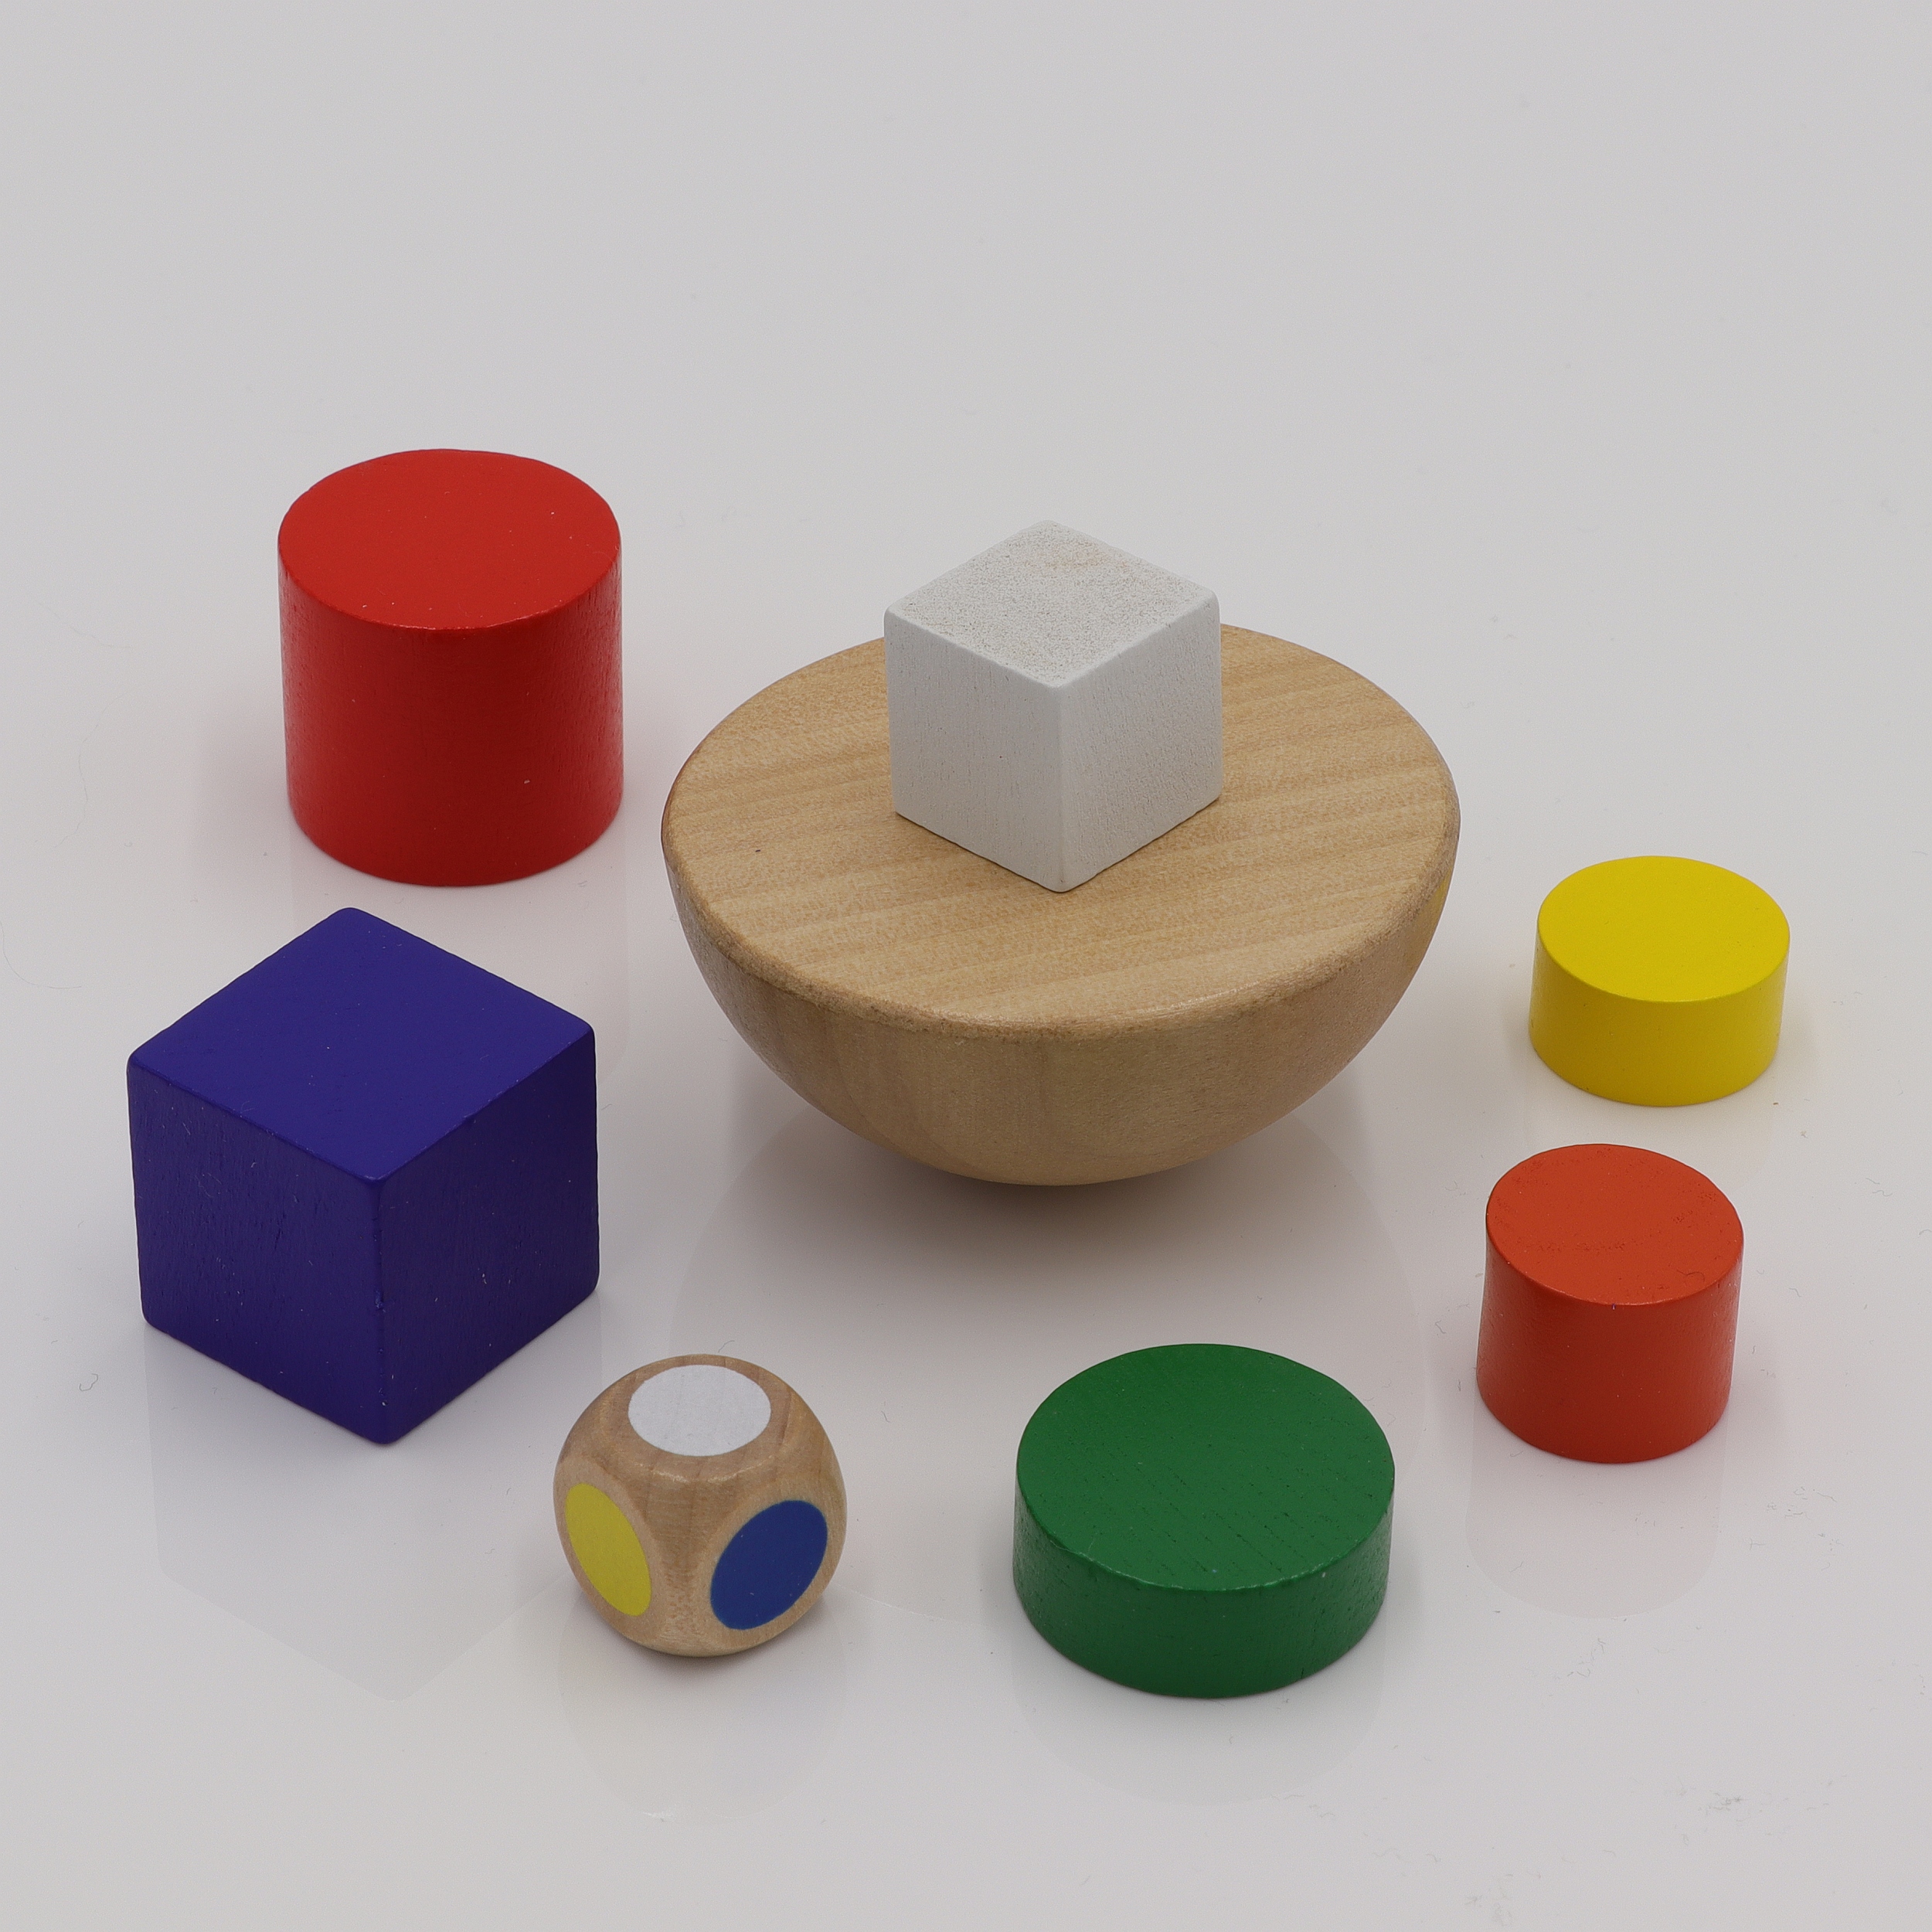 Balance Turm - Geschicklichkeitsspiel aus Holz - Farben und Logik